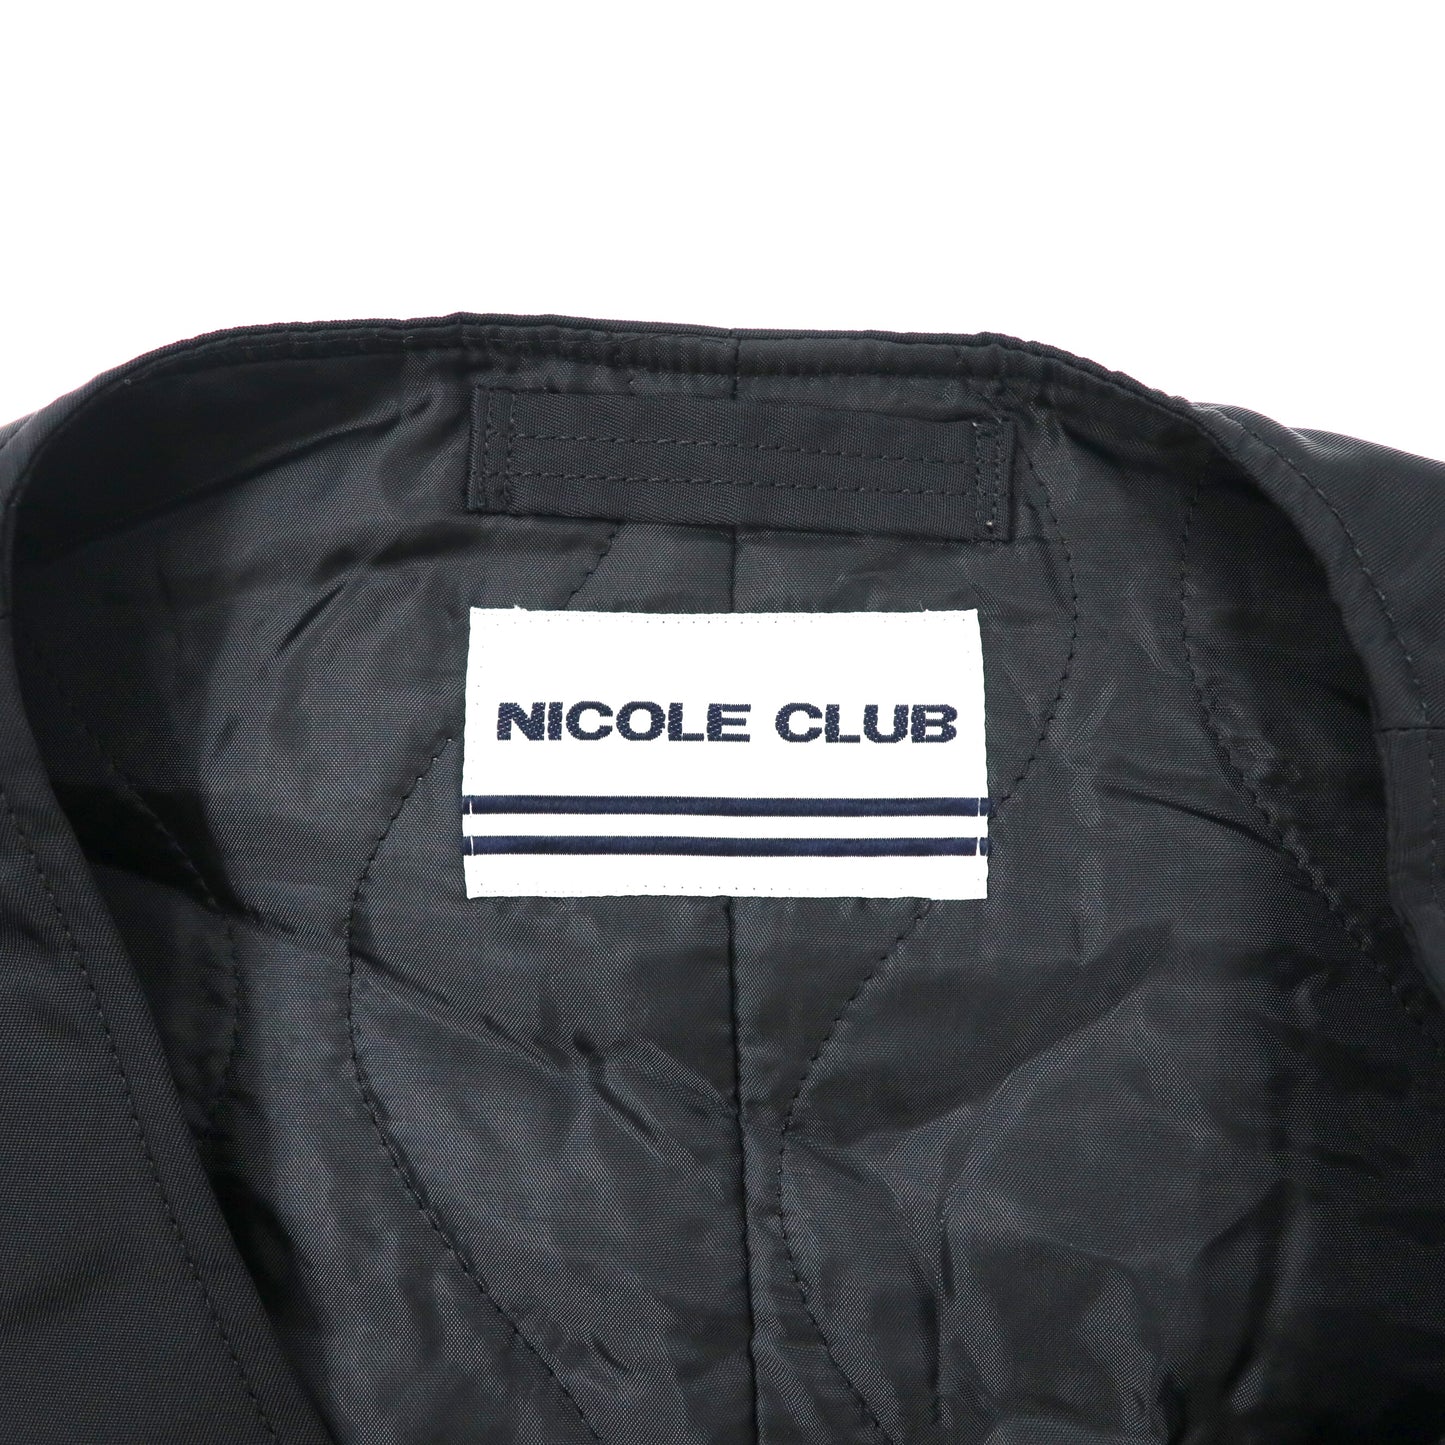 NICOLE CLUB タクティカルベスト M ブラック ナイロン 90年代